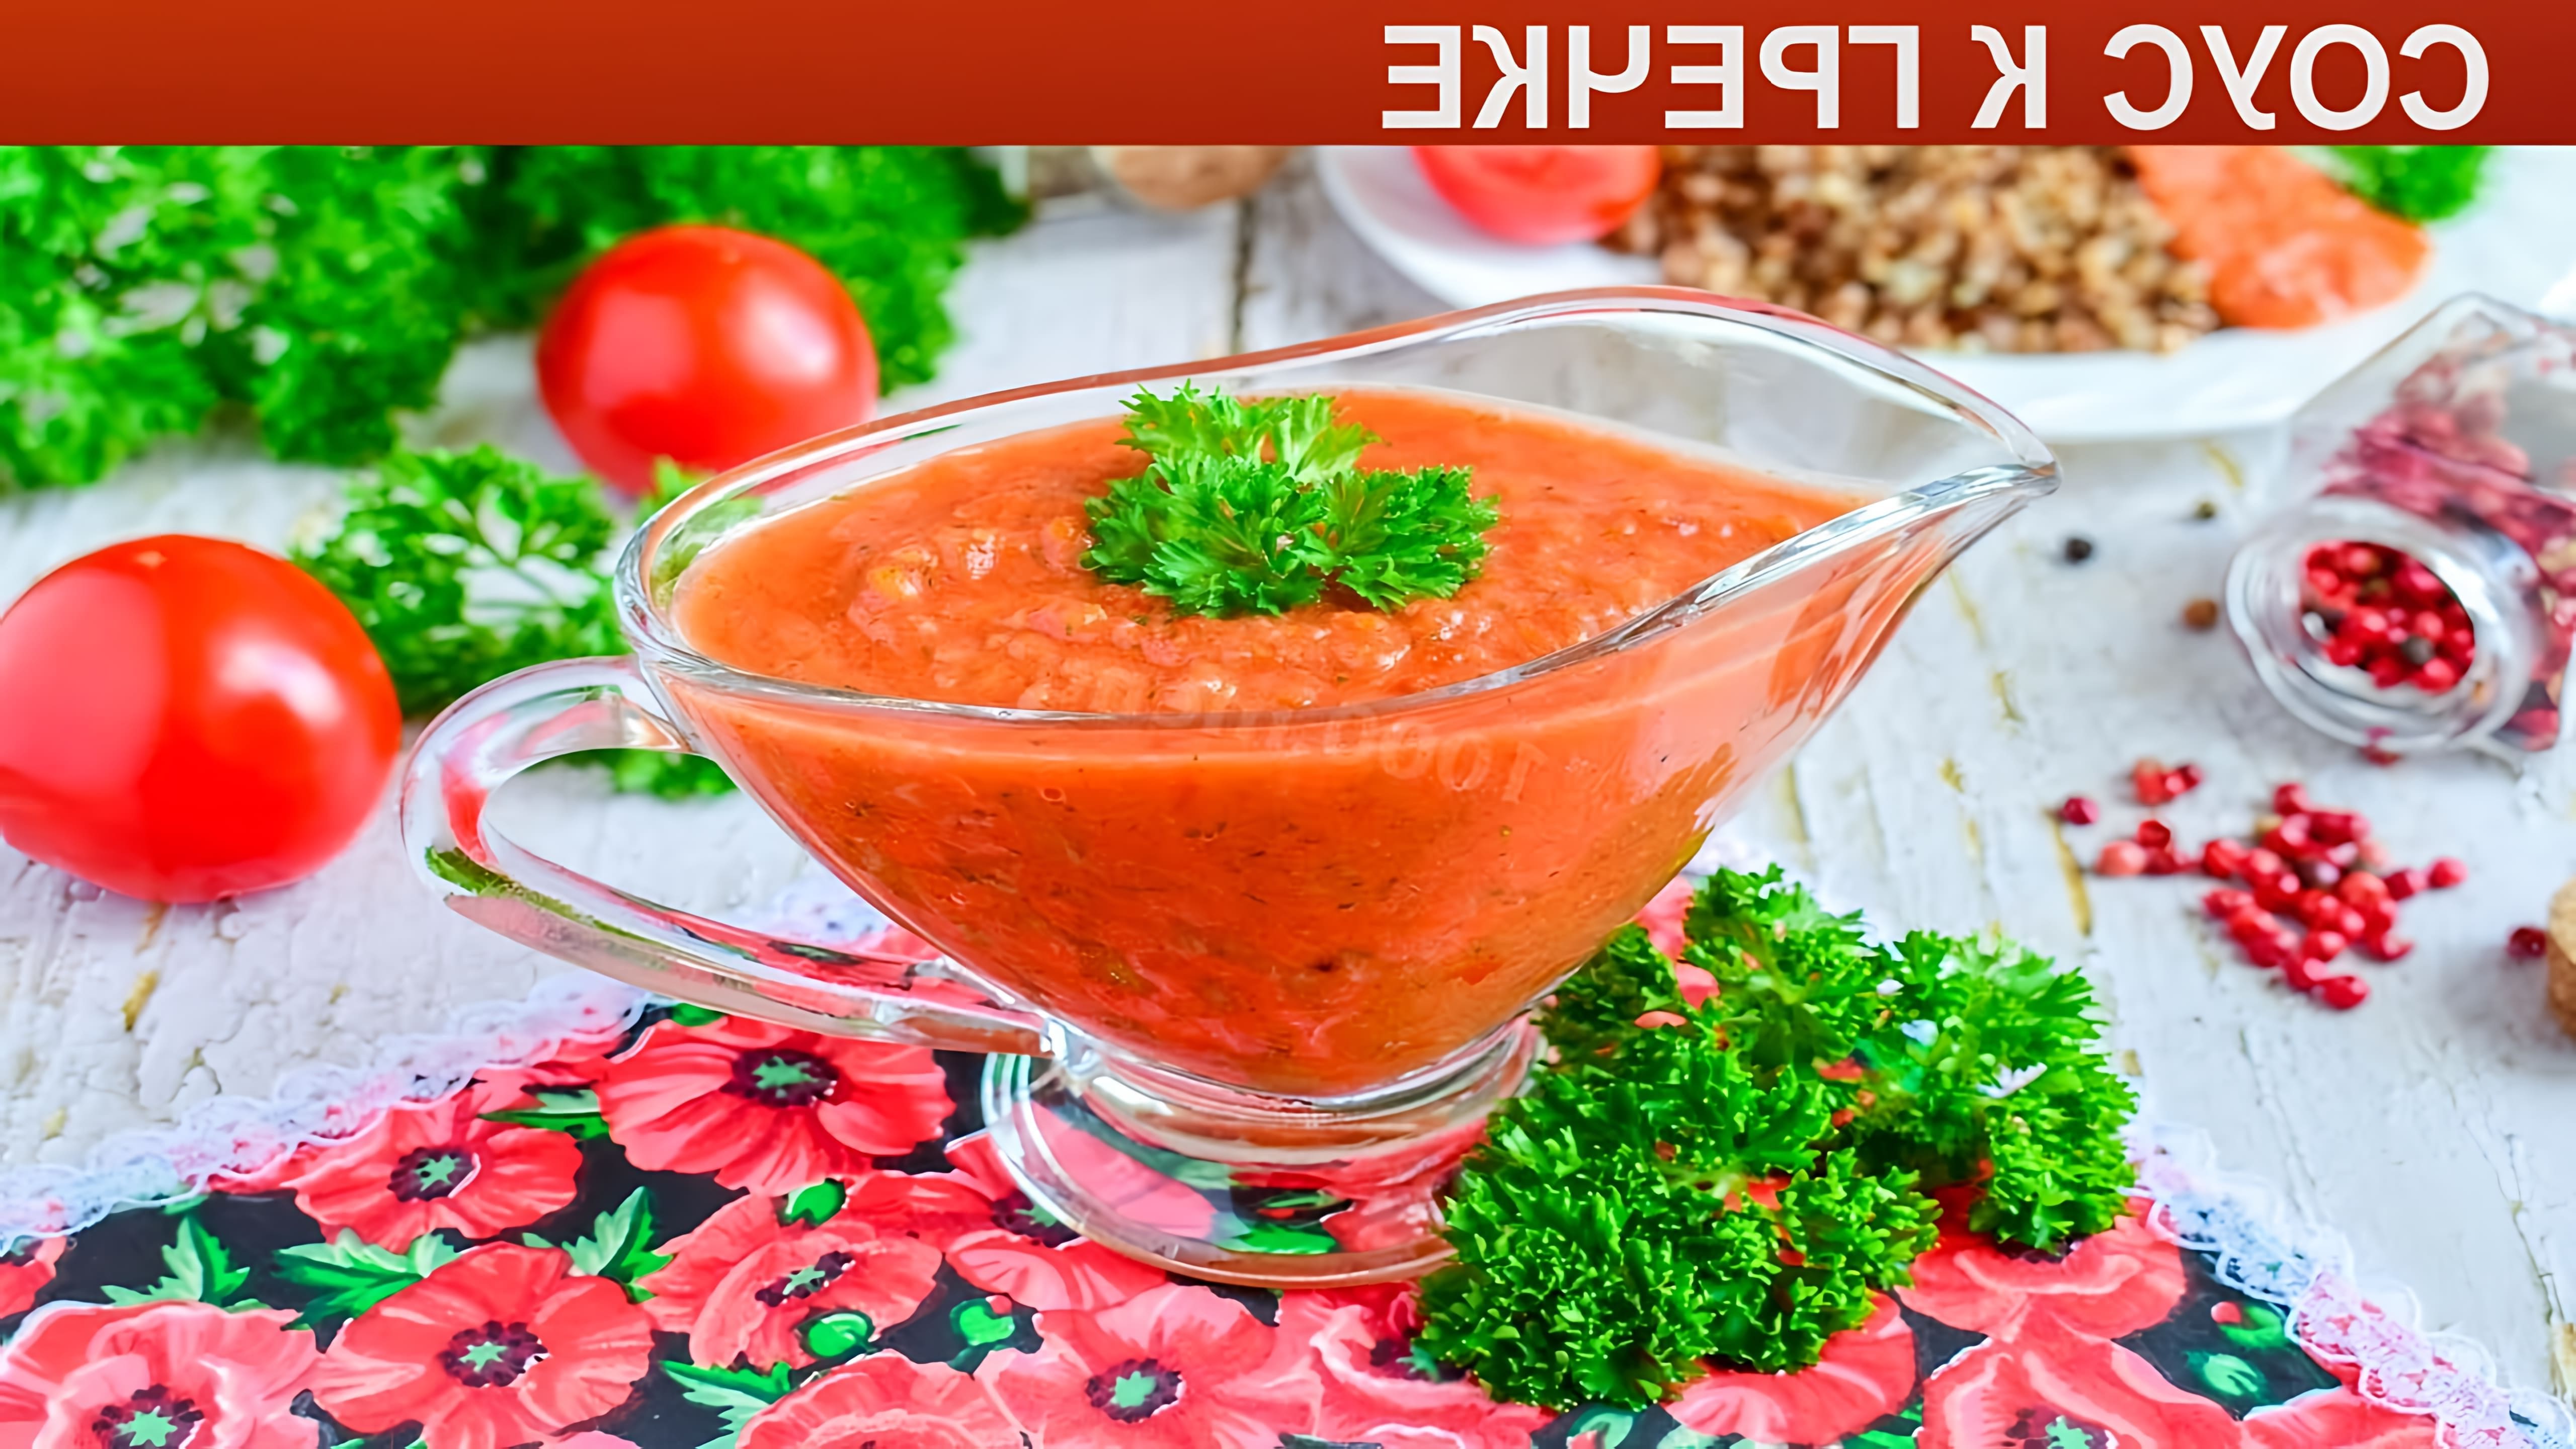 Легкий, свежий, вкусный, быстрый, из простых продуктов! Вкус соуса для гречки зависит от состава ингредиентов. 